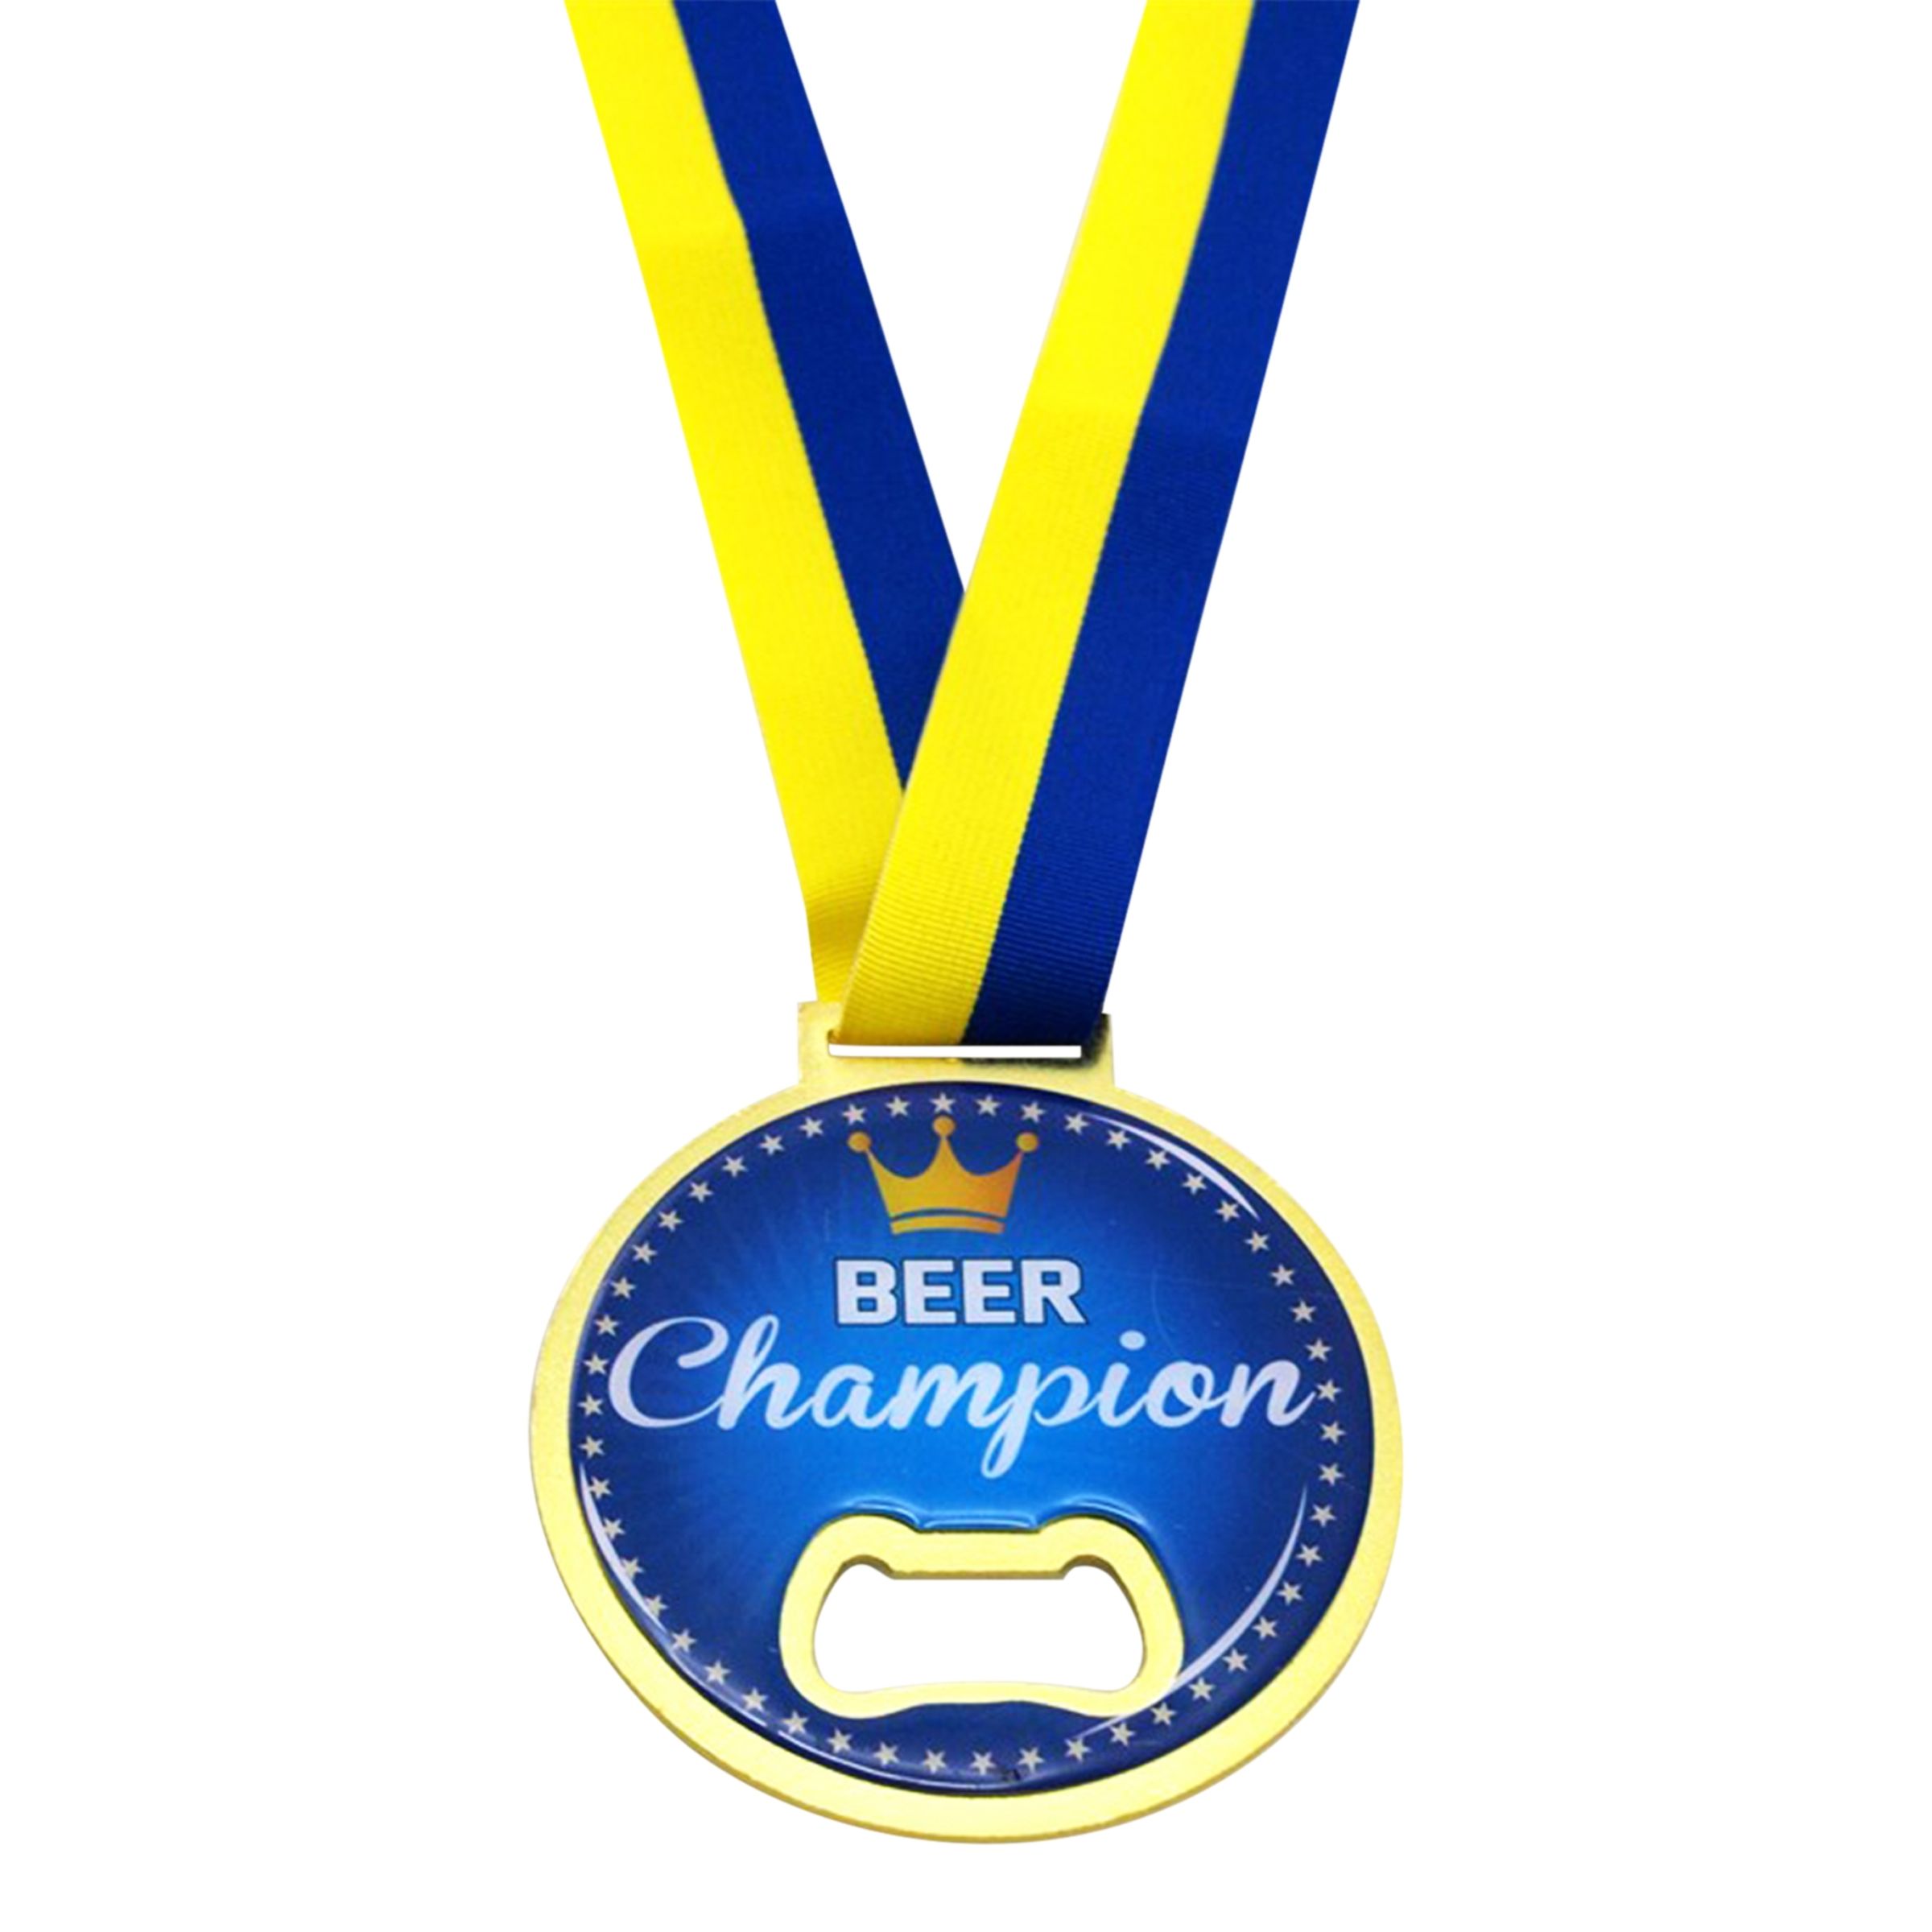 Kapsylöppnare Beer Champion med Blå/Gult Band